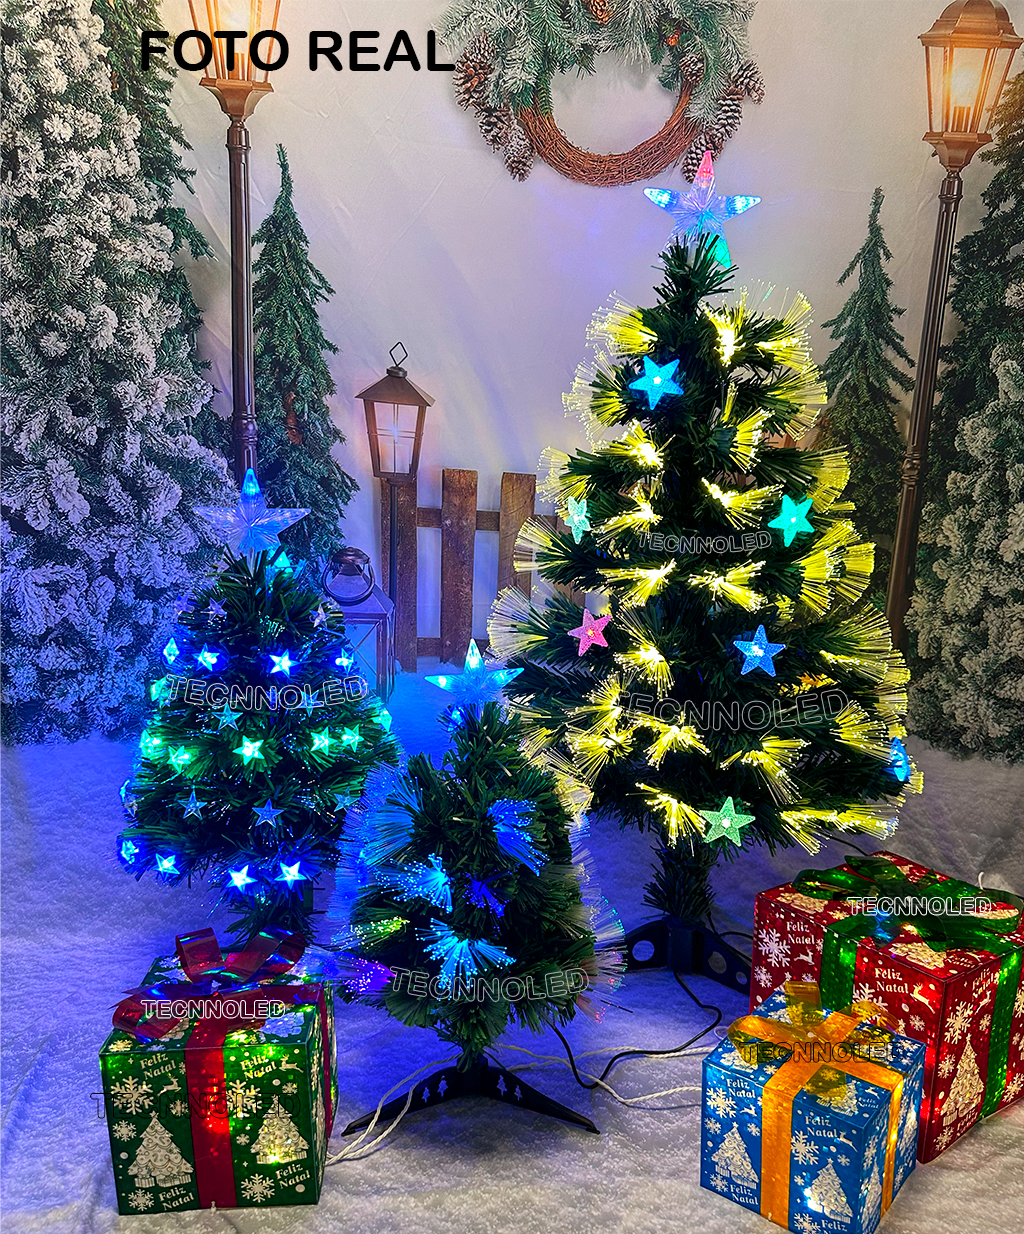 Árvore De Natal Branca 90 cm Importada